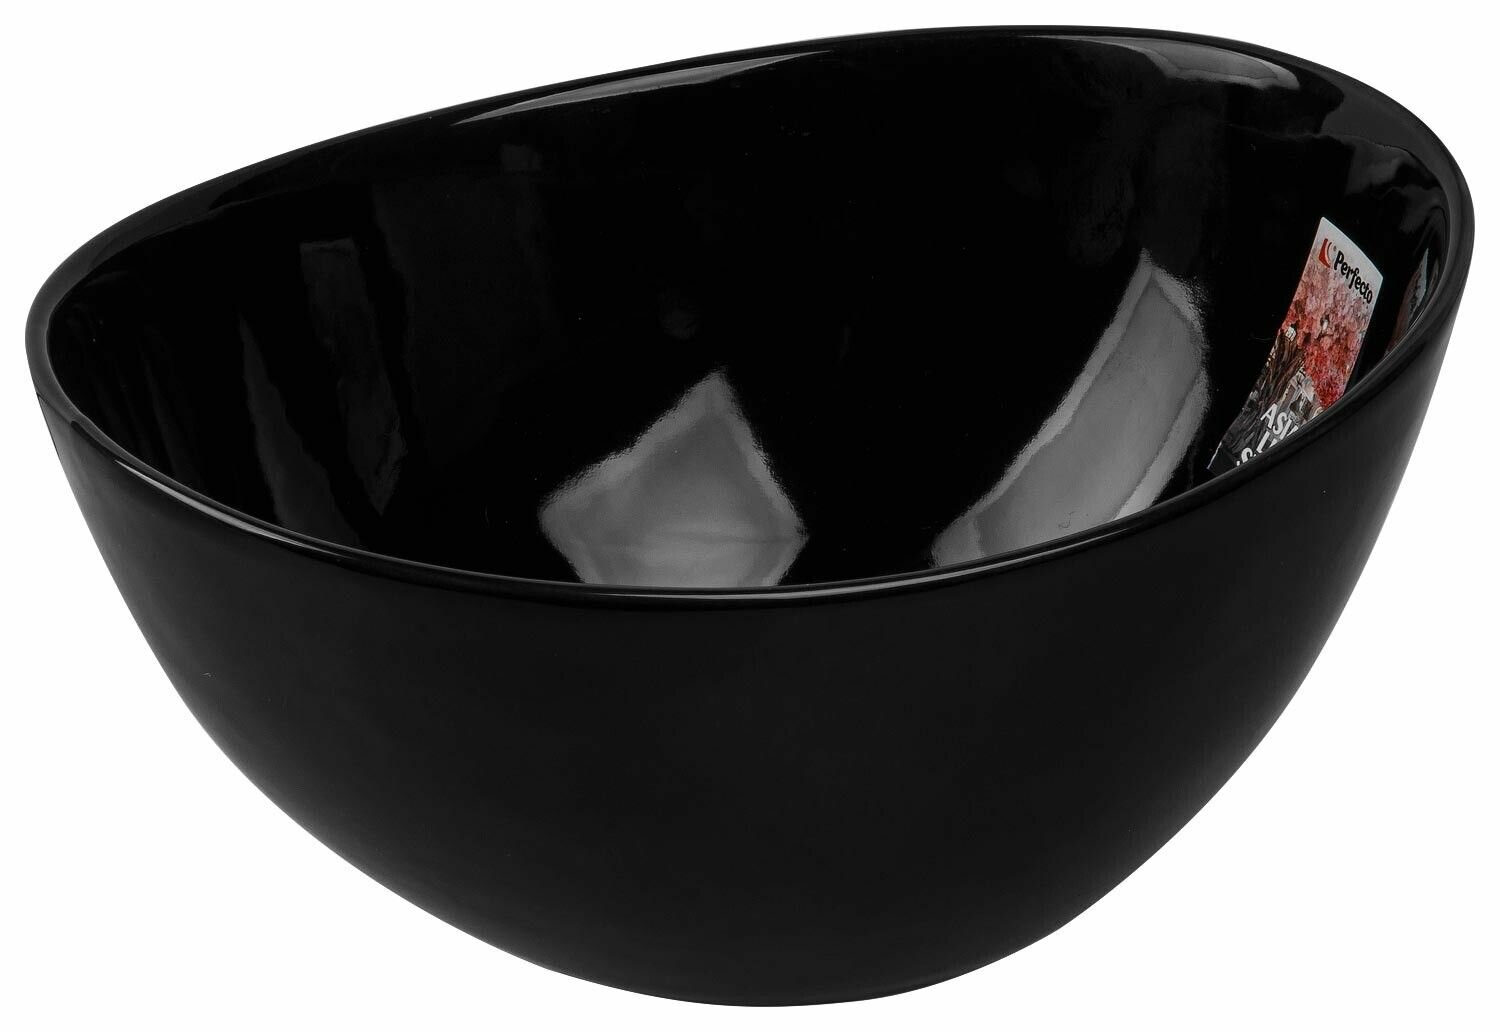 Салатник керамический 20,5х17,5 см PERFECTO LINEA Asian черный (17-121759)